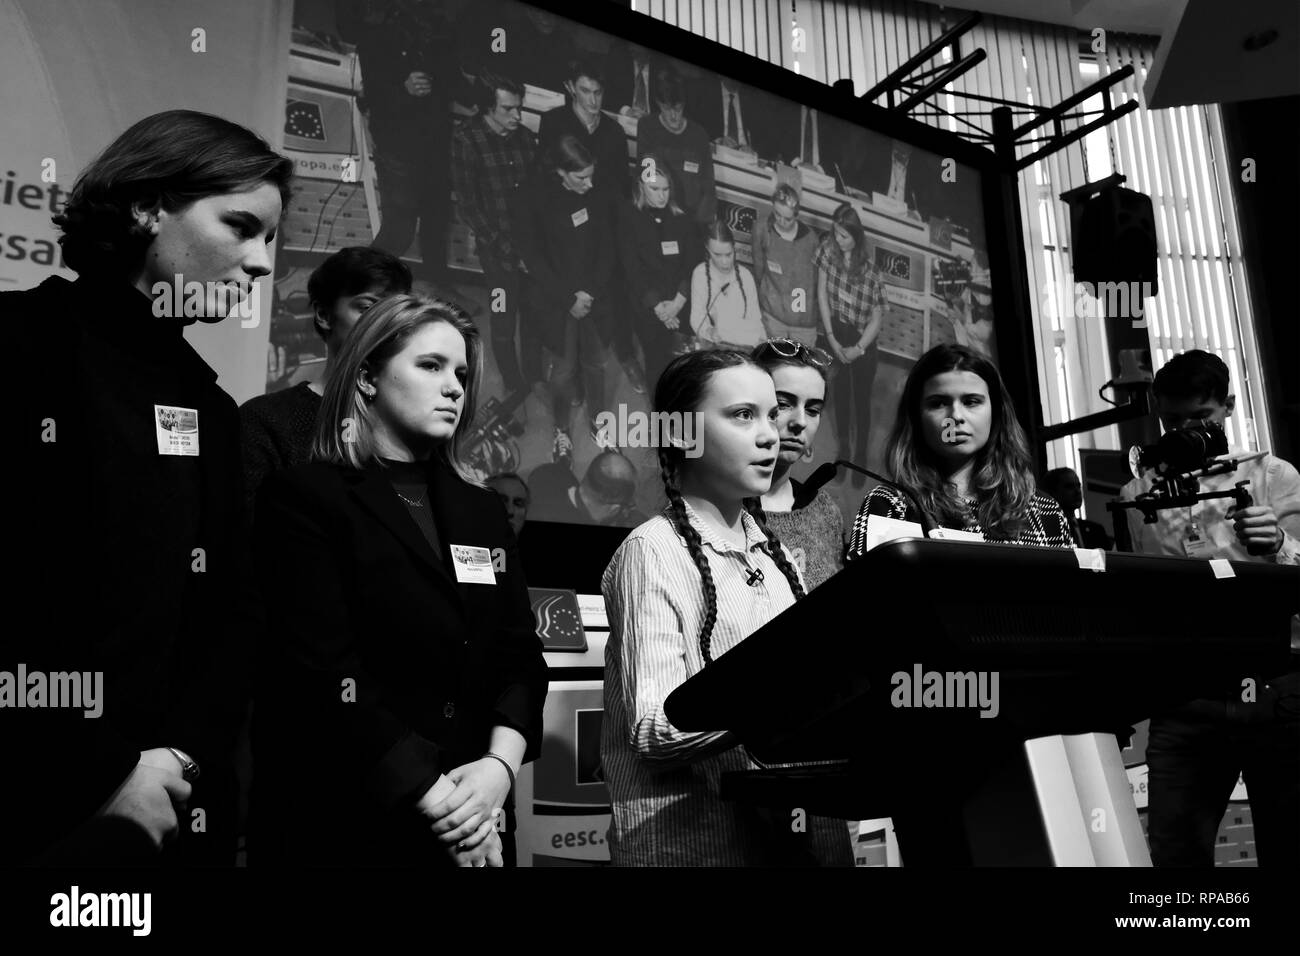 Brüssel, Belgien. 21. Februar 2019. Sechzehn Jahre alte schwedische Klima Aktivistin Greta Thunberg besucht in der Europäischen Wirtschafts- und Sozialausschusses. Alexandros Michailidis/Alamy leben Nachrichten Stockfoto